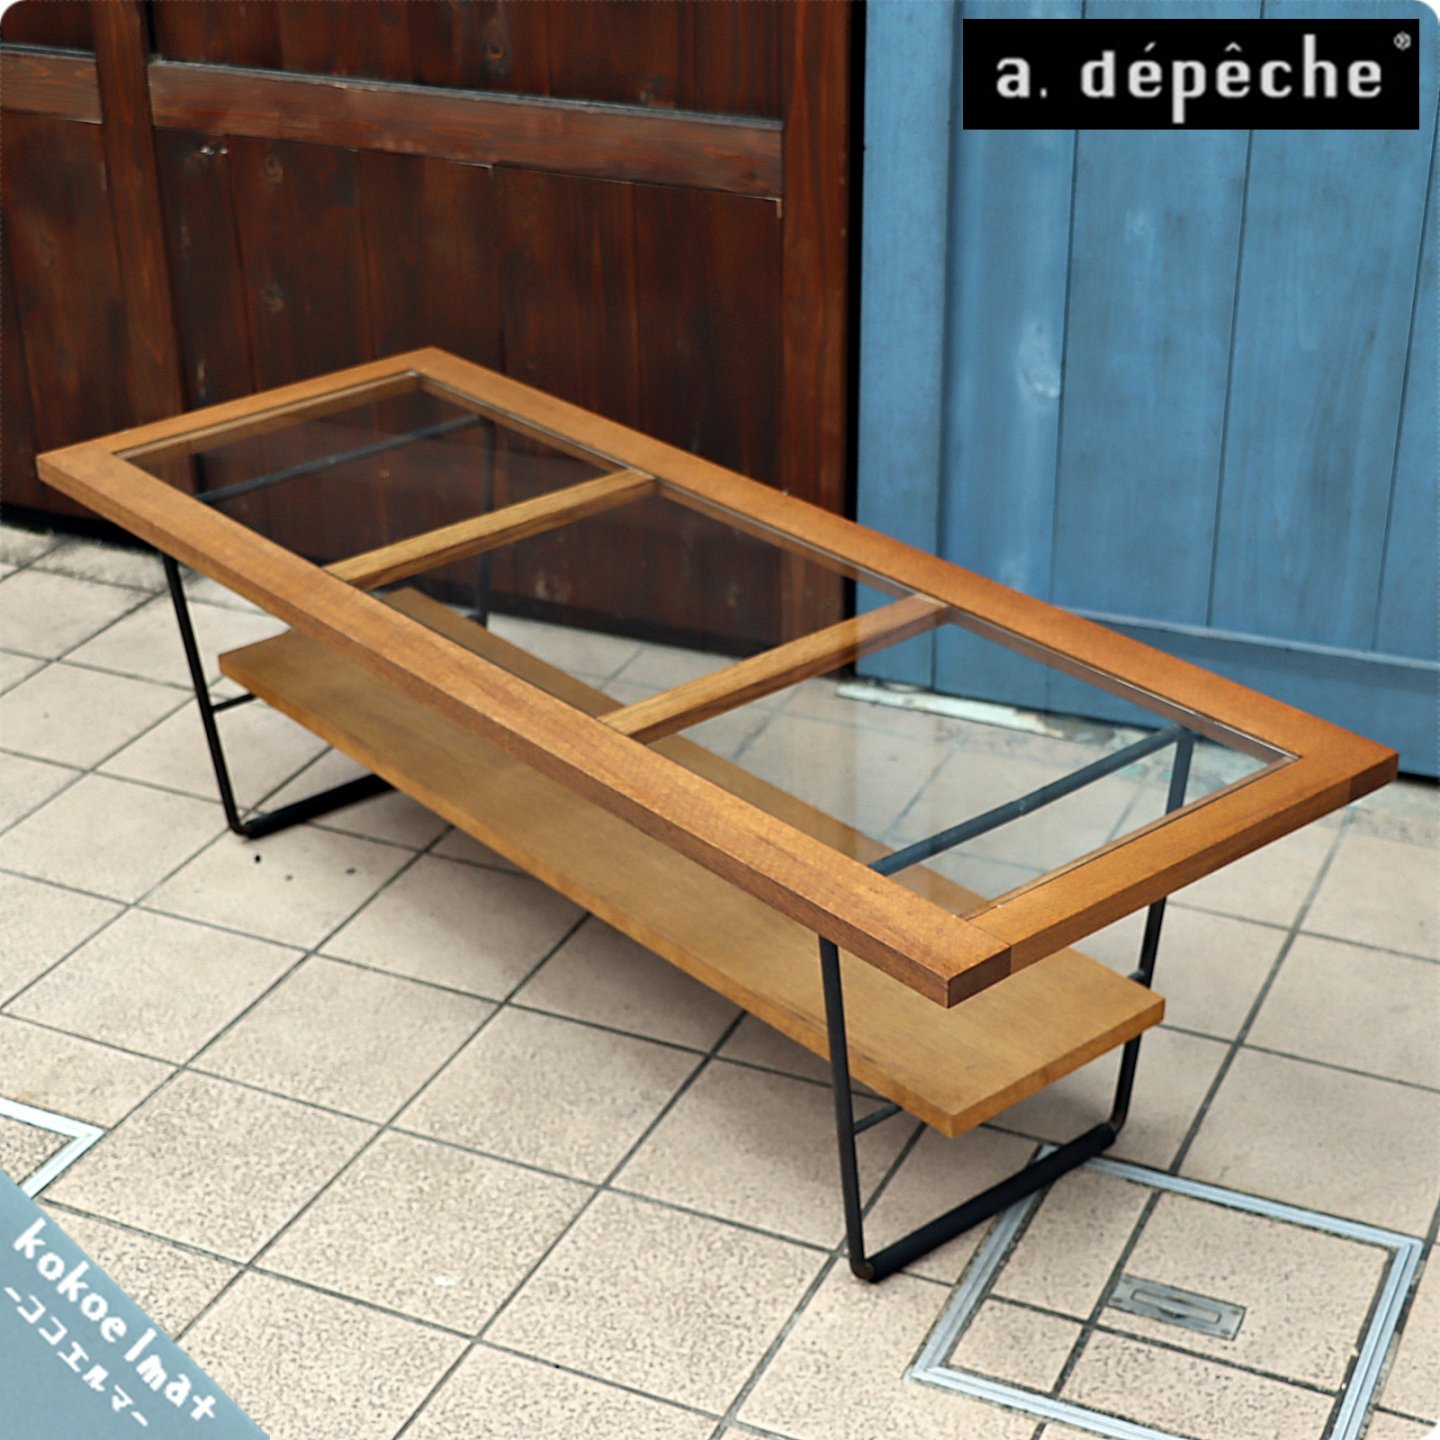 a.depeche(アデペシュ)のインダストリアルな雰囲気のリビングテーブル